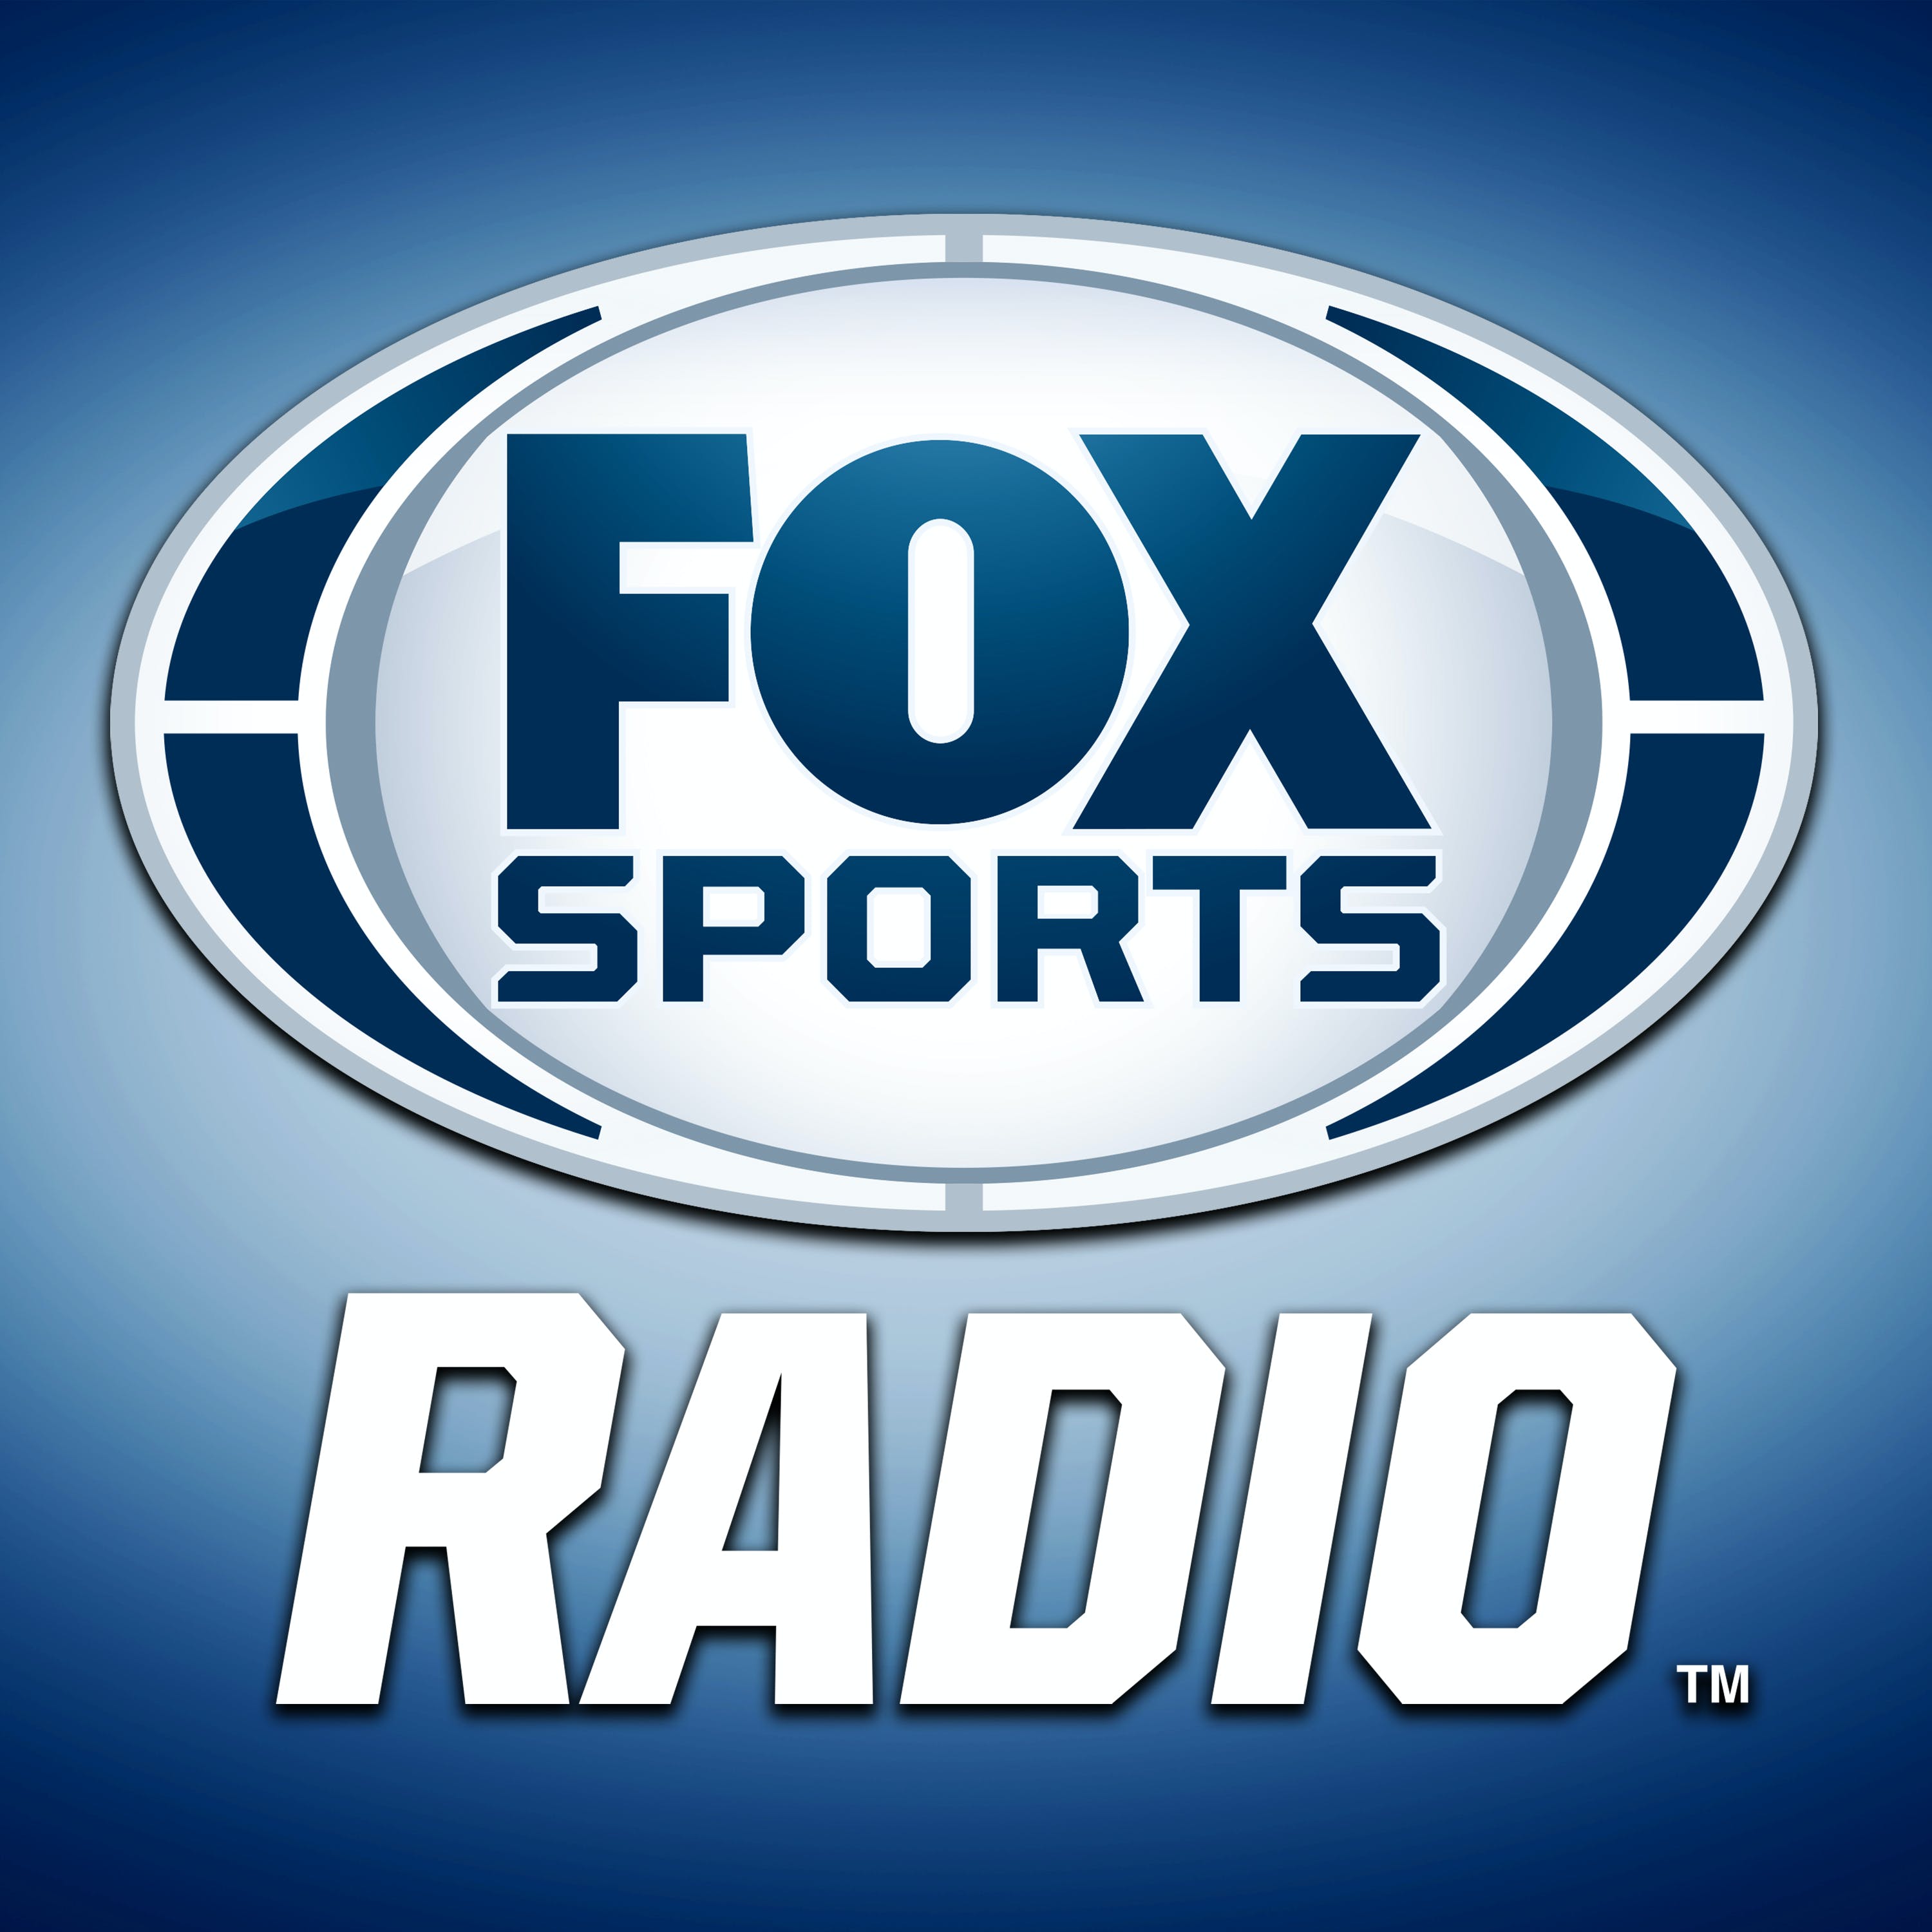 04/10/2021 - FOX Sports Saturday with Steve Hartman and Geoff Schwartz